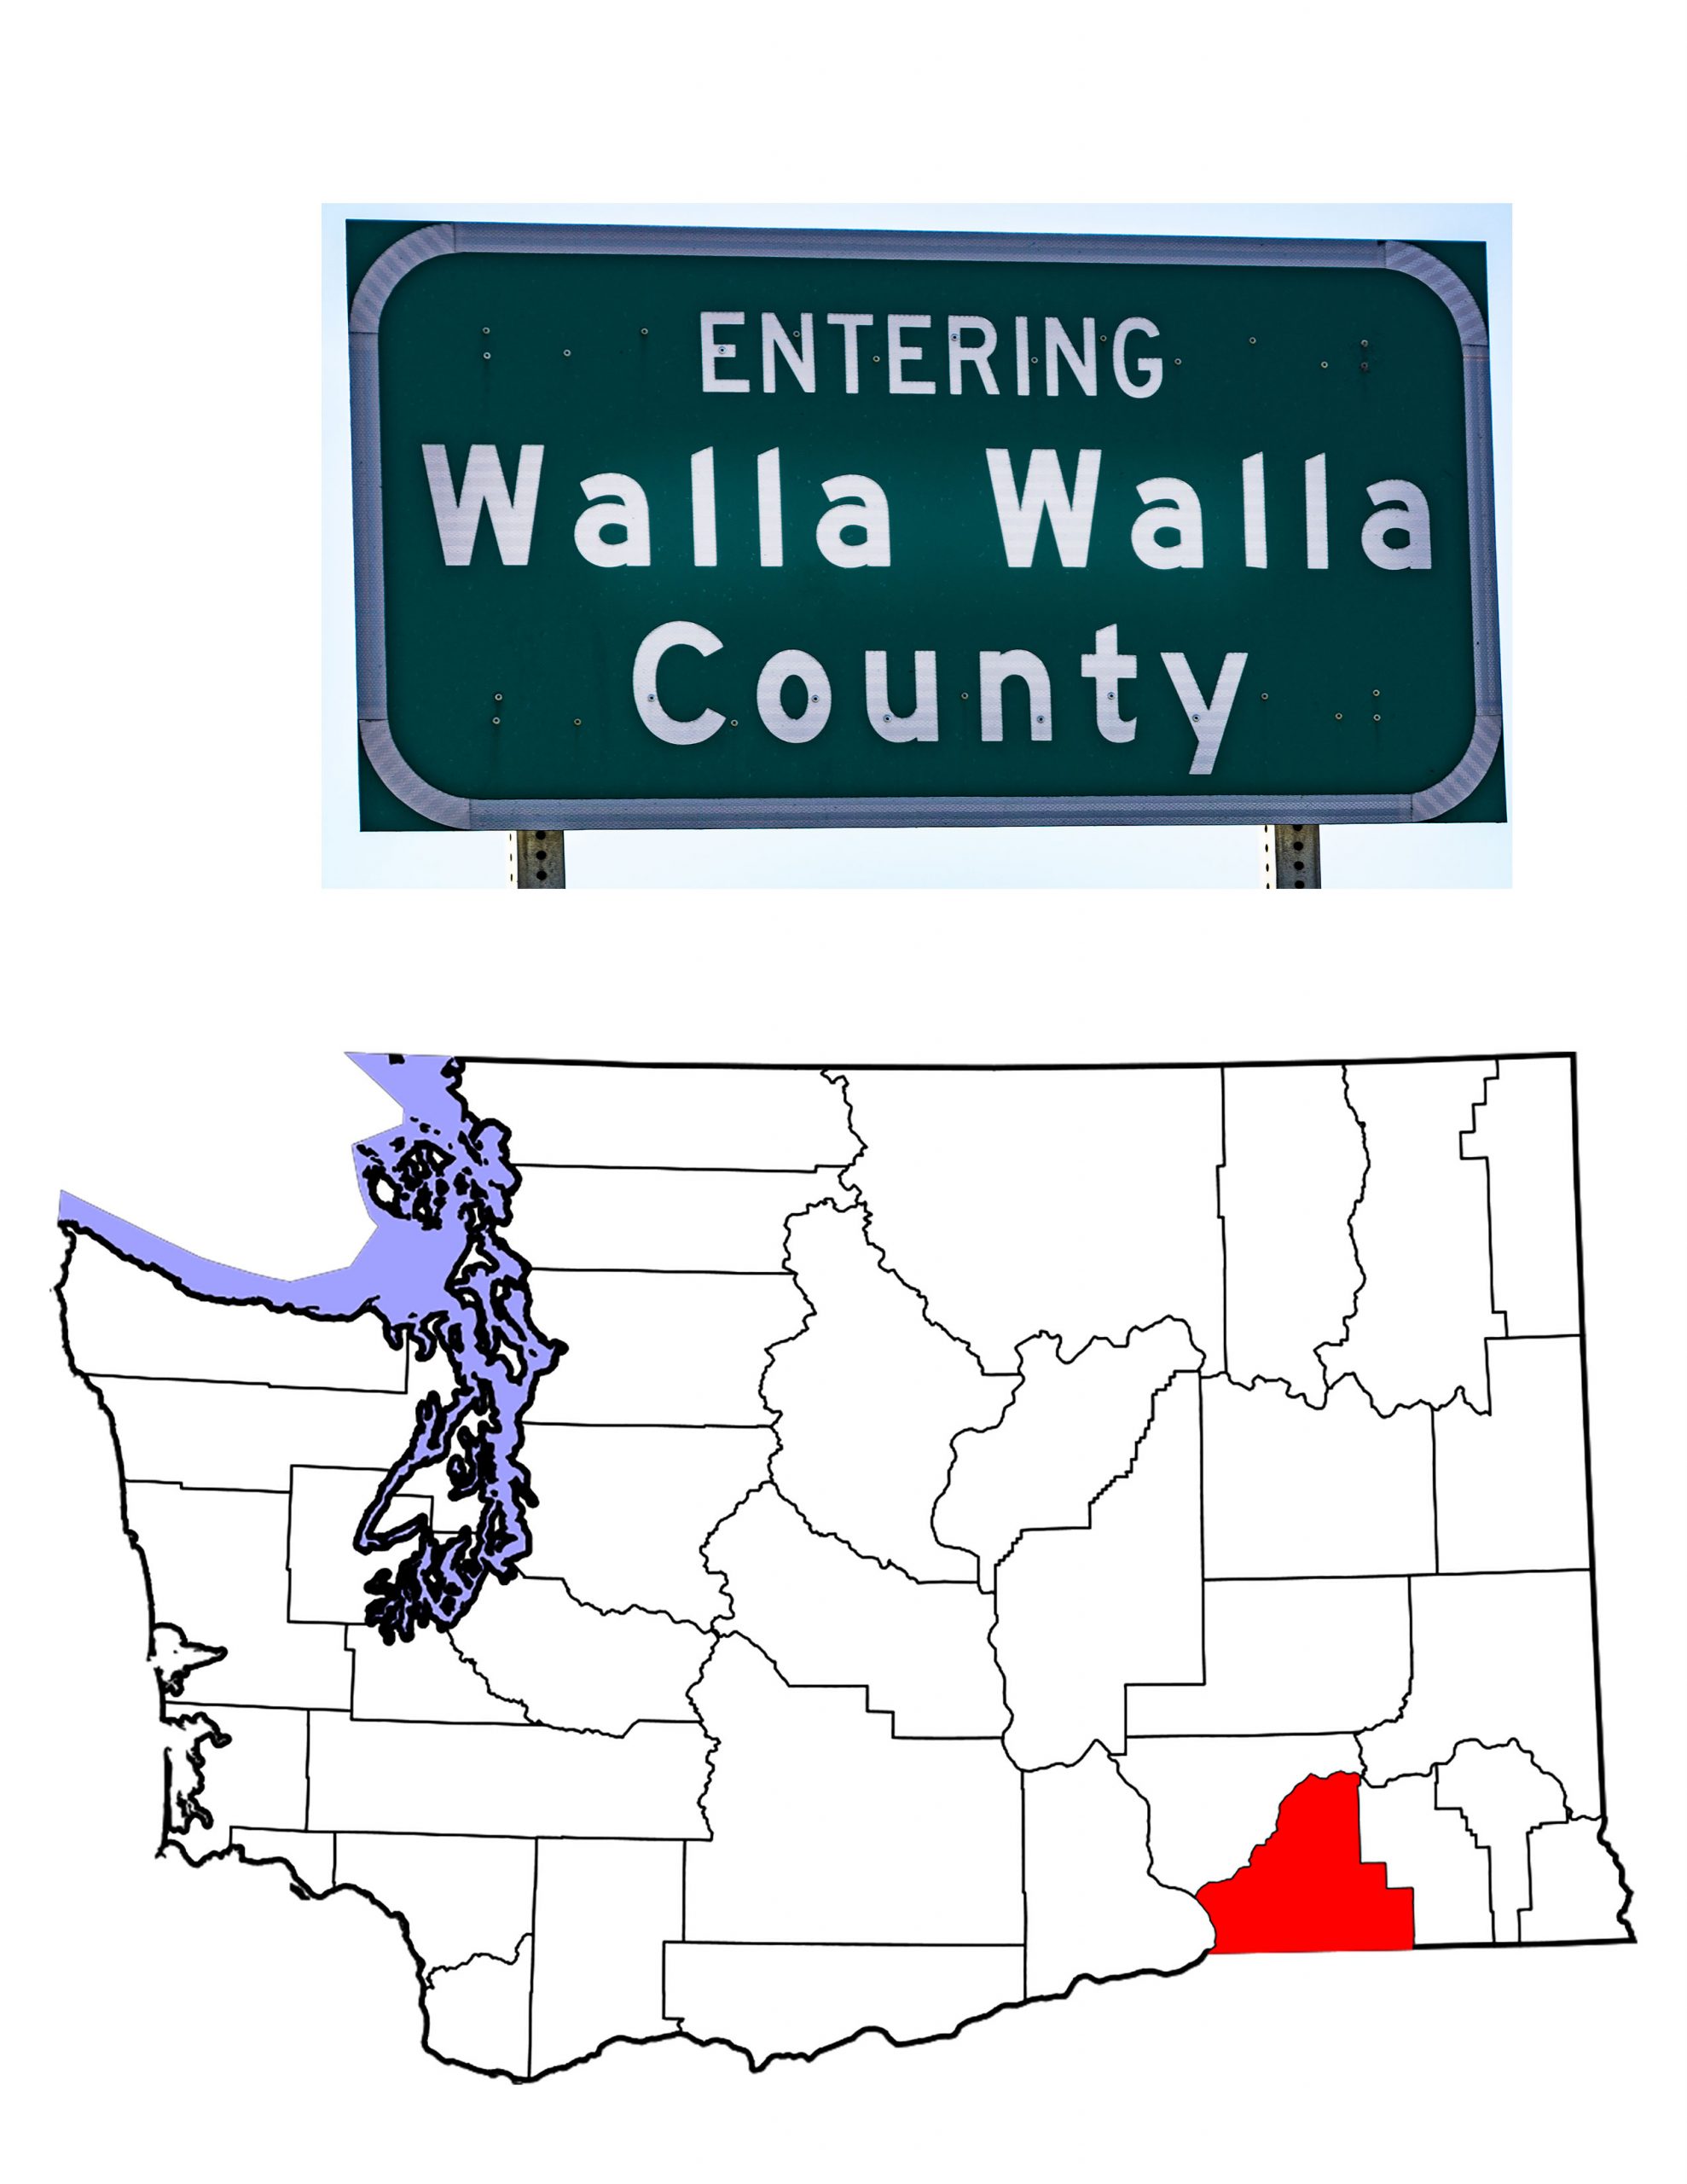 A map of Washington showing Walla Walla County